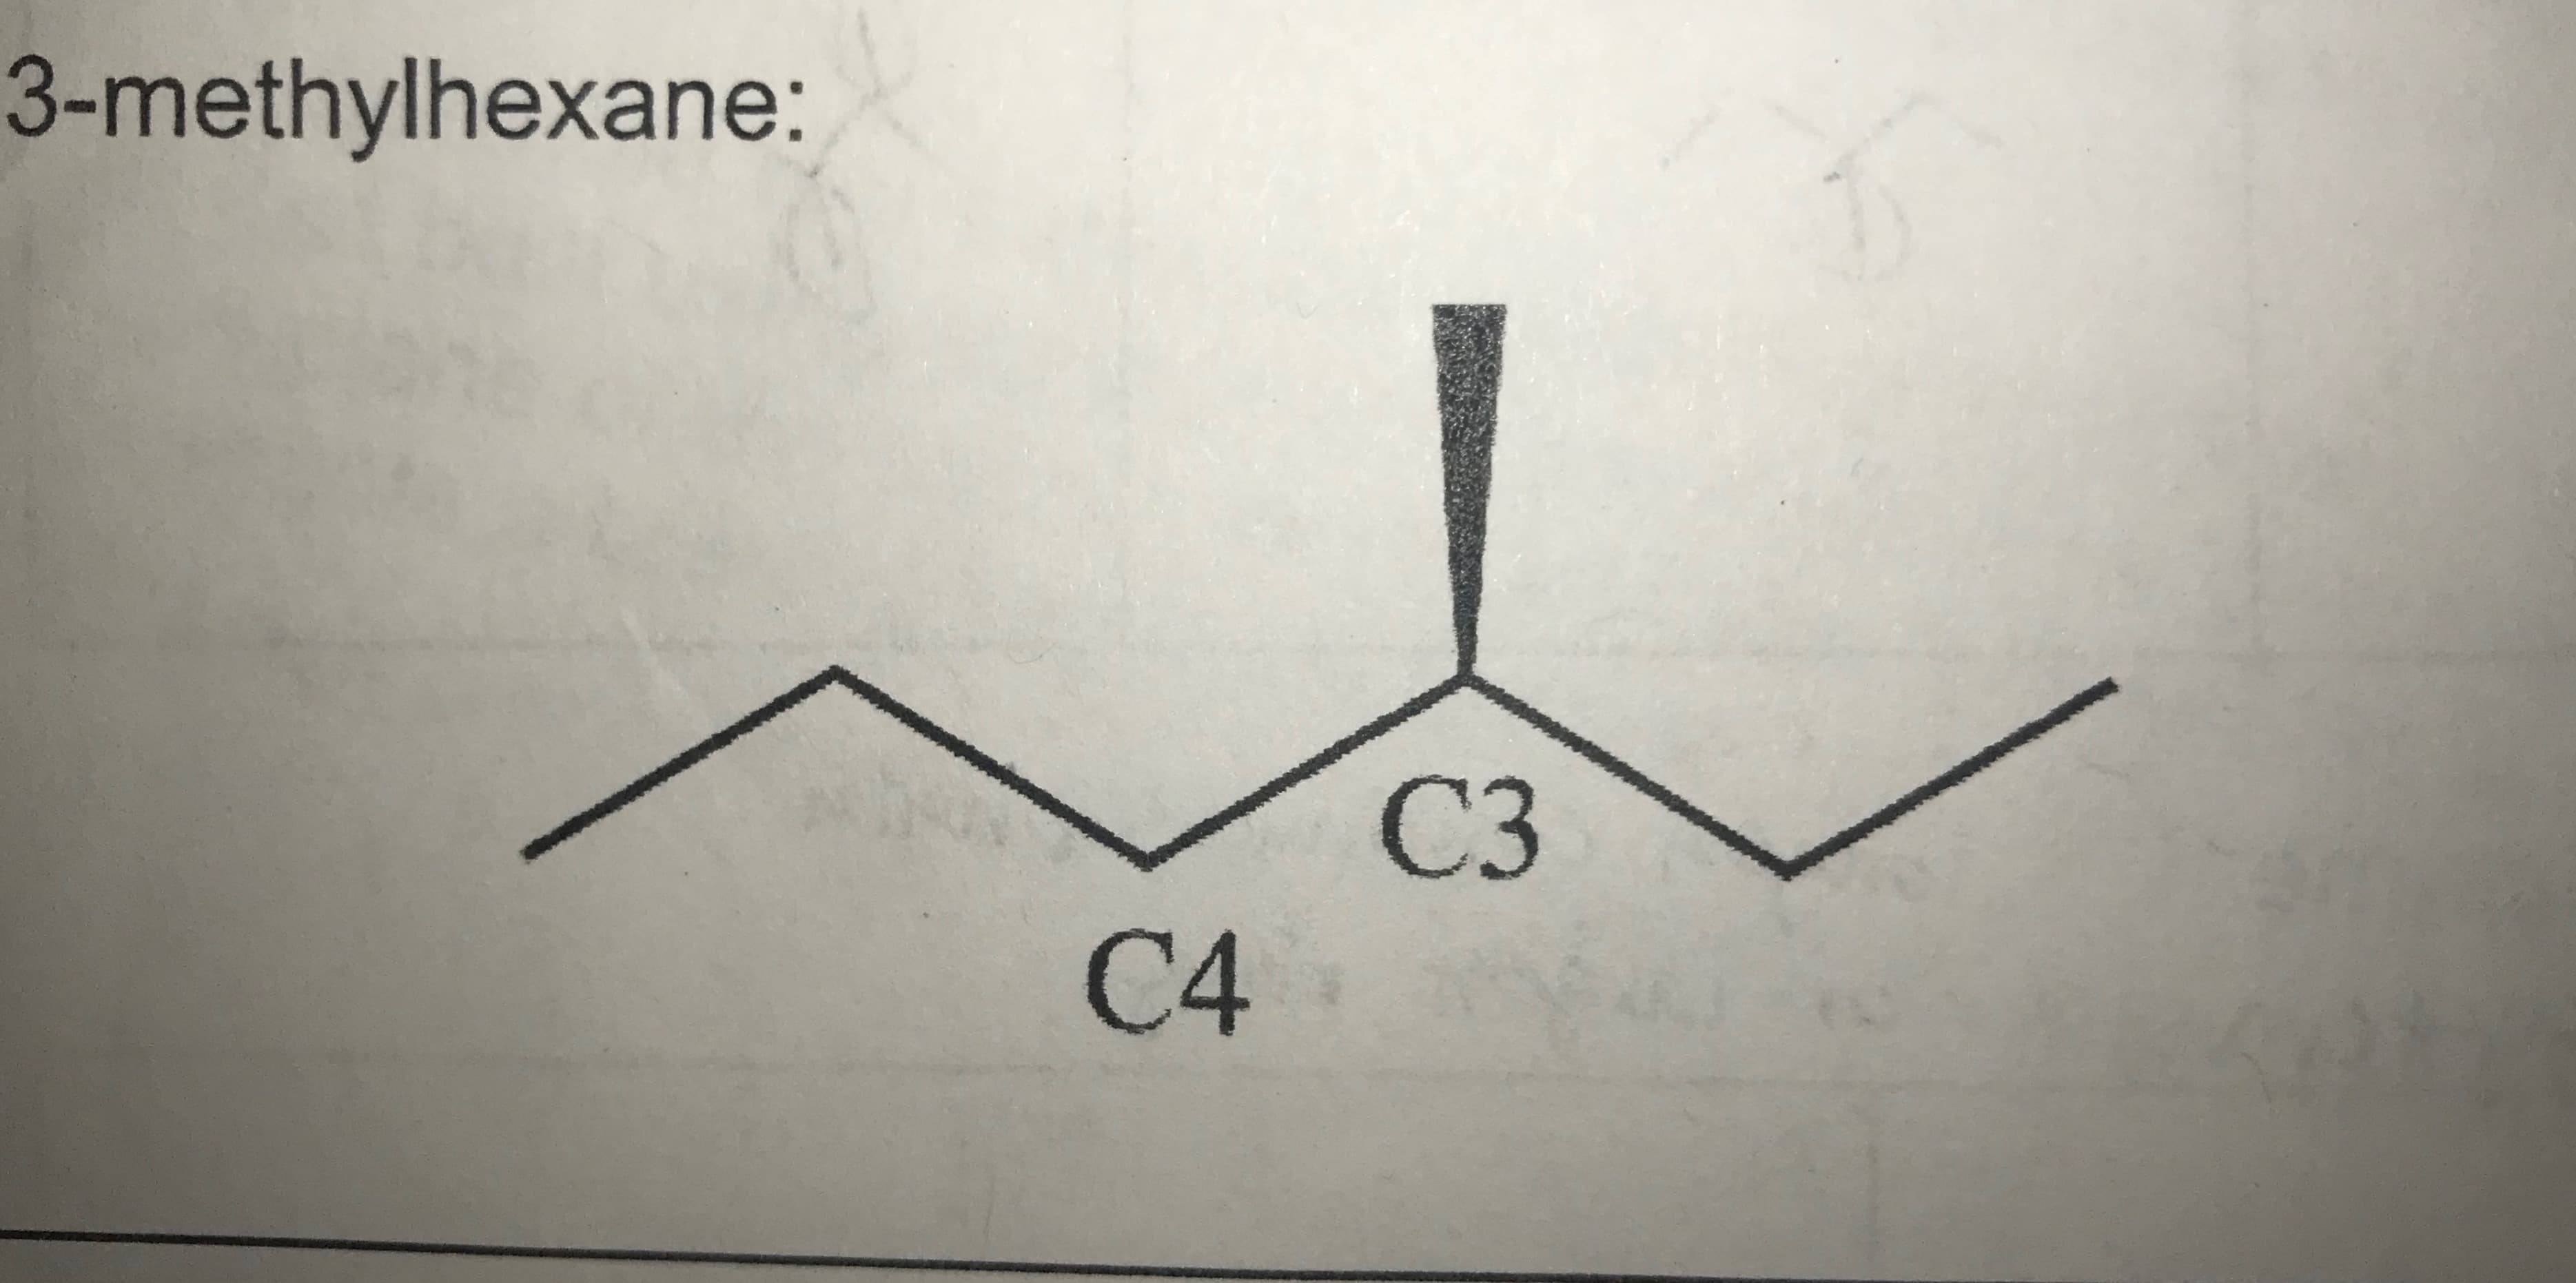 3-methylhexane:
СЗ
C4
